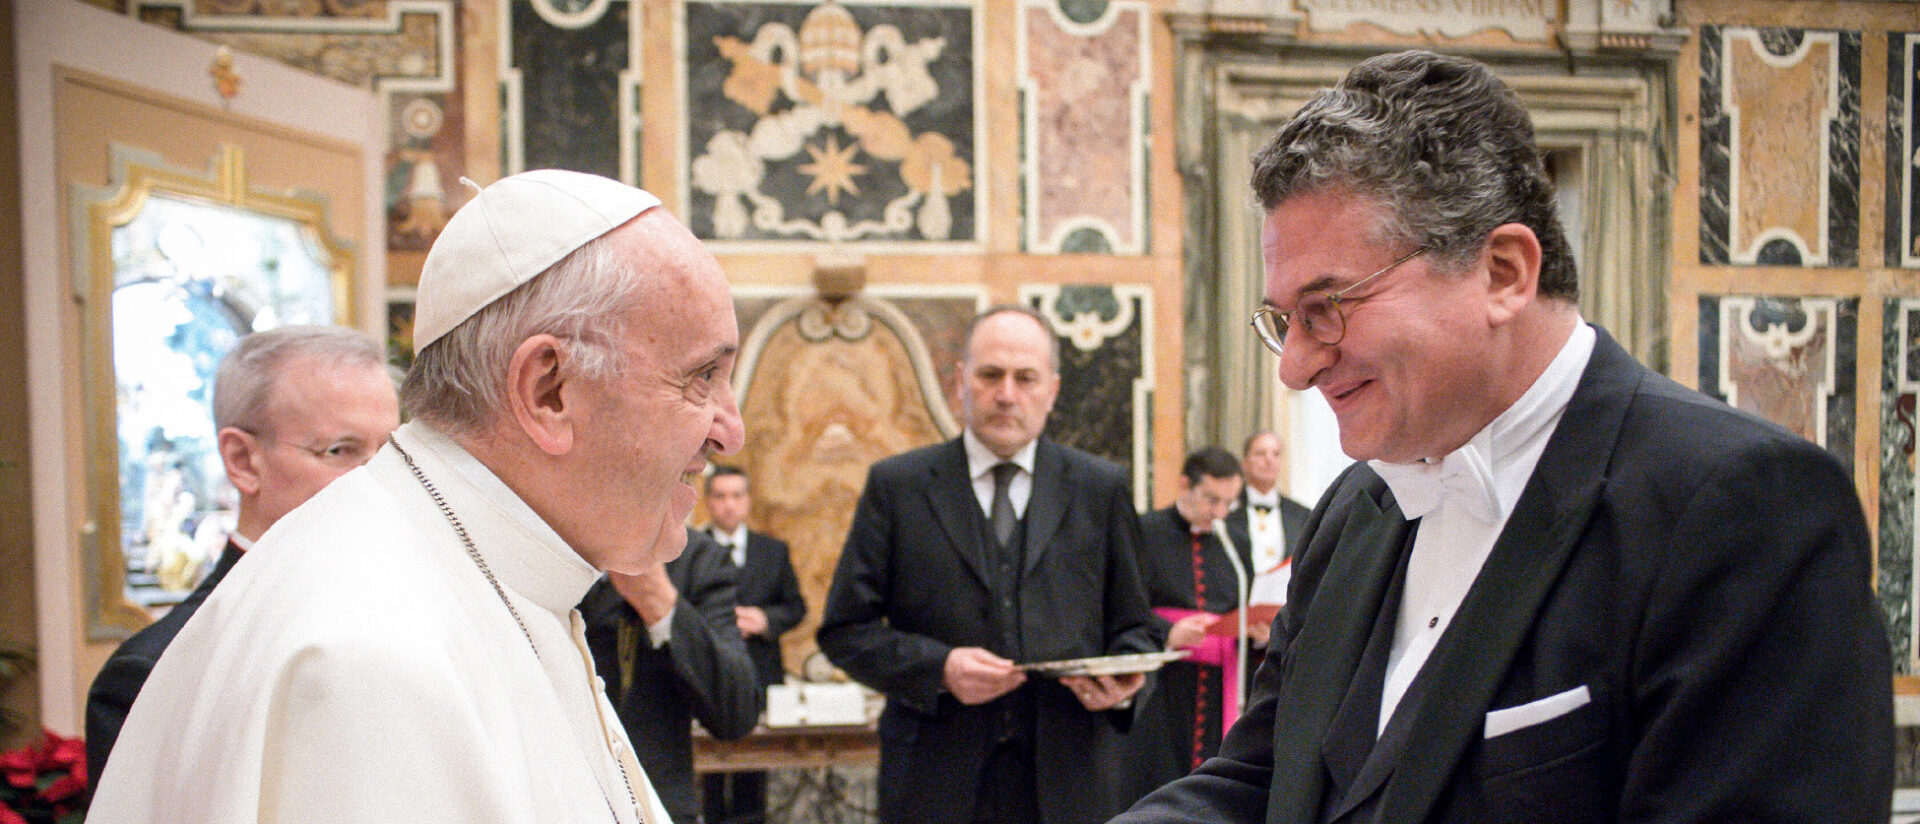 Papst Franziskus und Vaduz' Vatikan-Botschafter Prinz Stefan von und zu Liechtenstein im Jahr 2017.